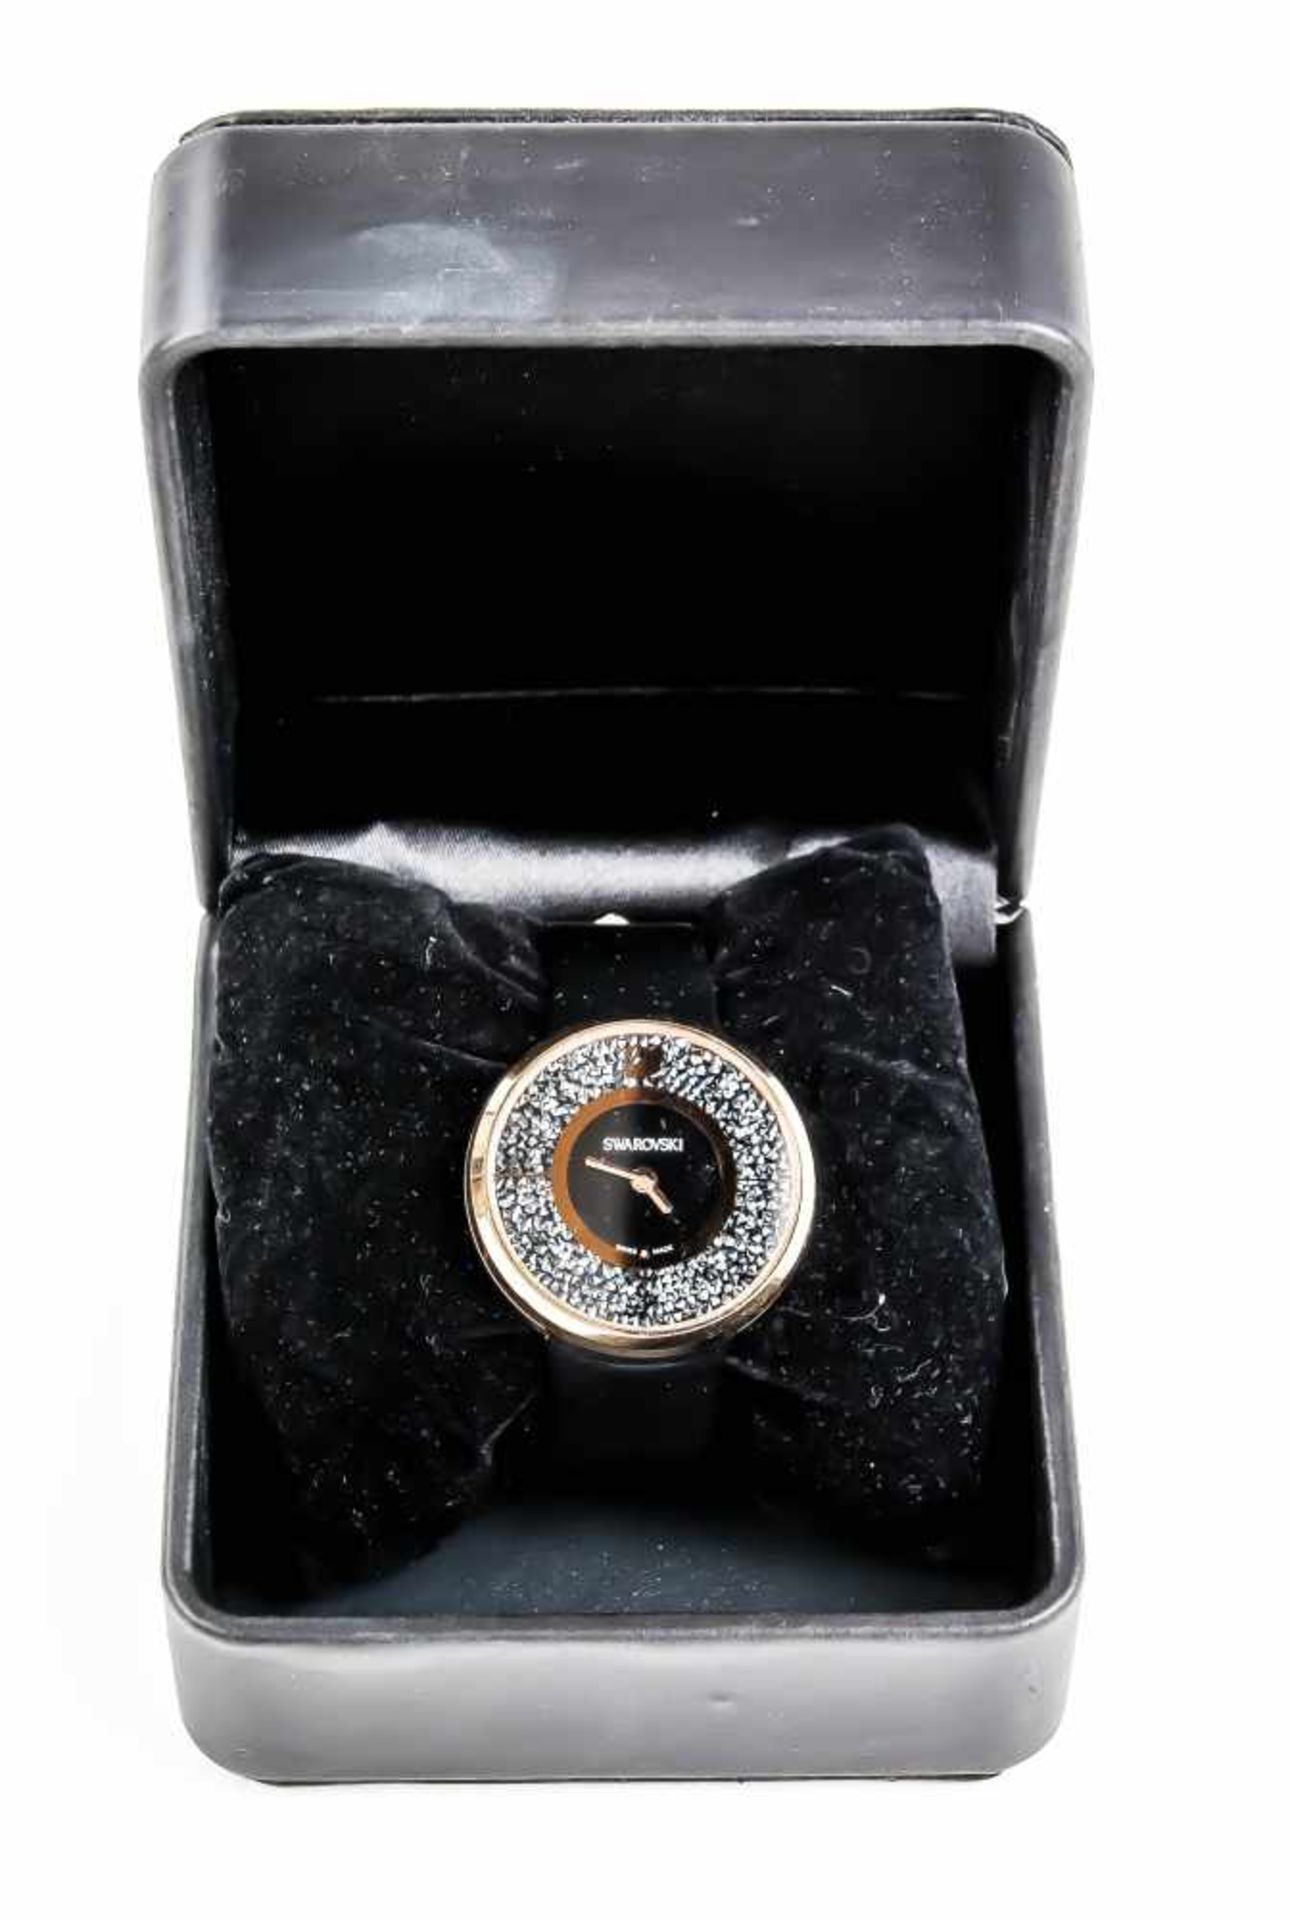 Swarovski Crystalline Pure Designer Watch, Mod. 5045371, Stahlgehäuse rose vergoldet mit